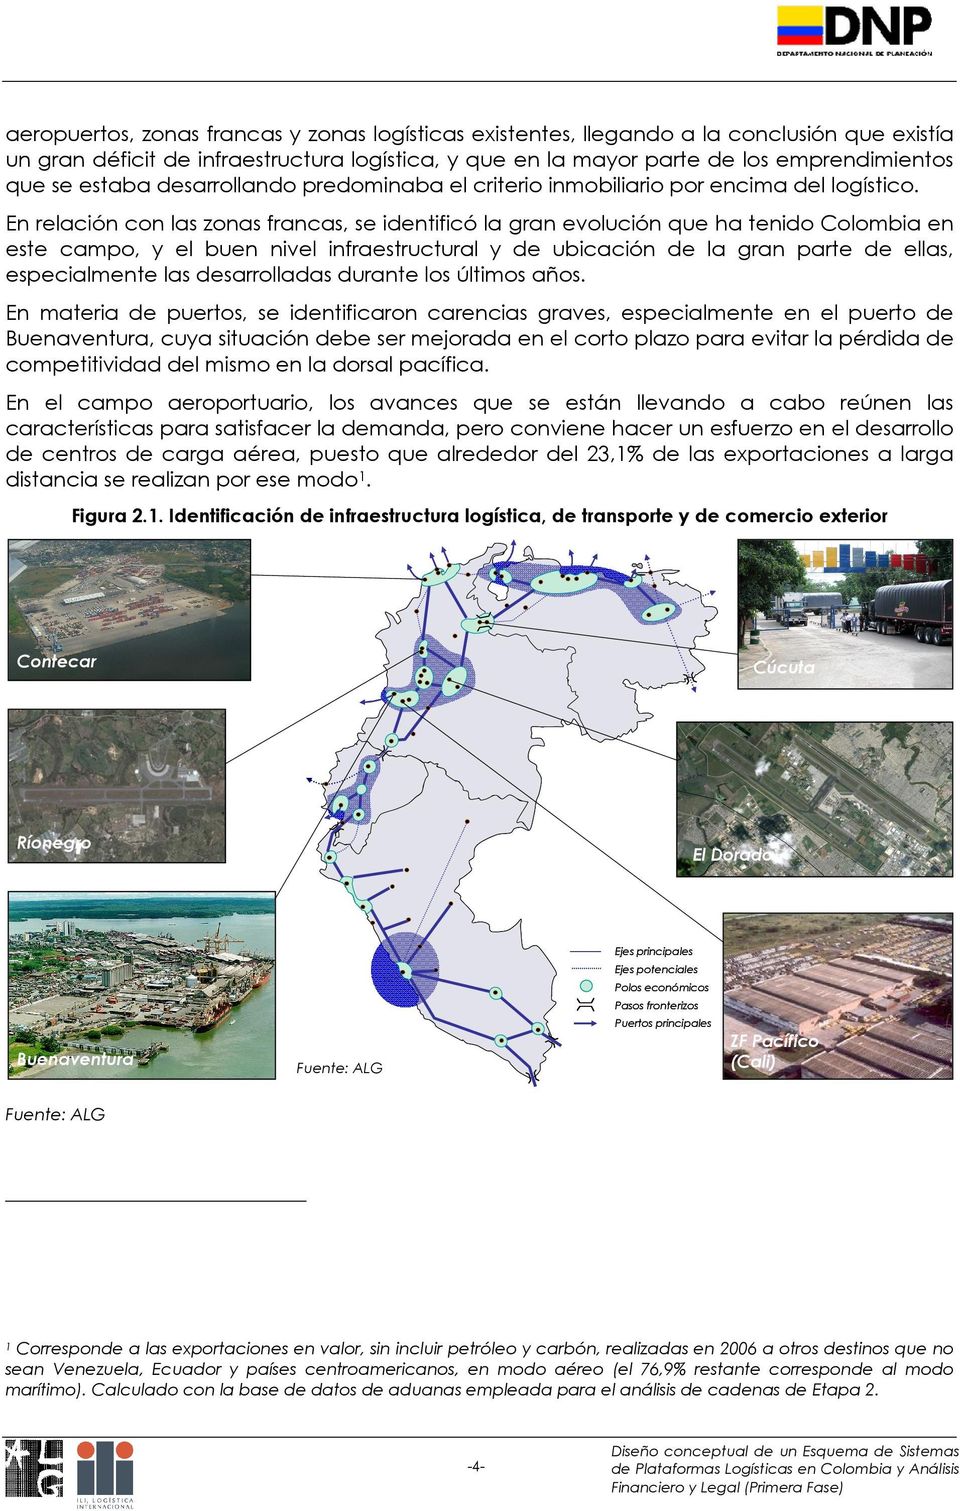 En relación con las zonas francas, se identificó la gran evolución que ha tenido Colombia en este campo, y el buen nivel infraestructural y de ubicación de la gran parte de ellas, especialmente las